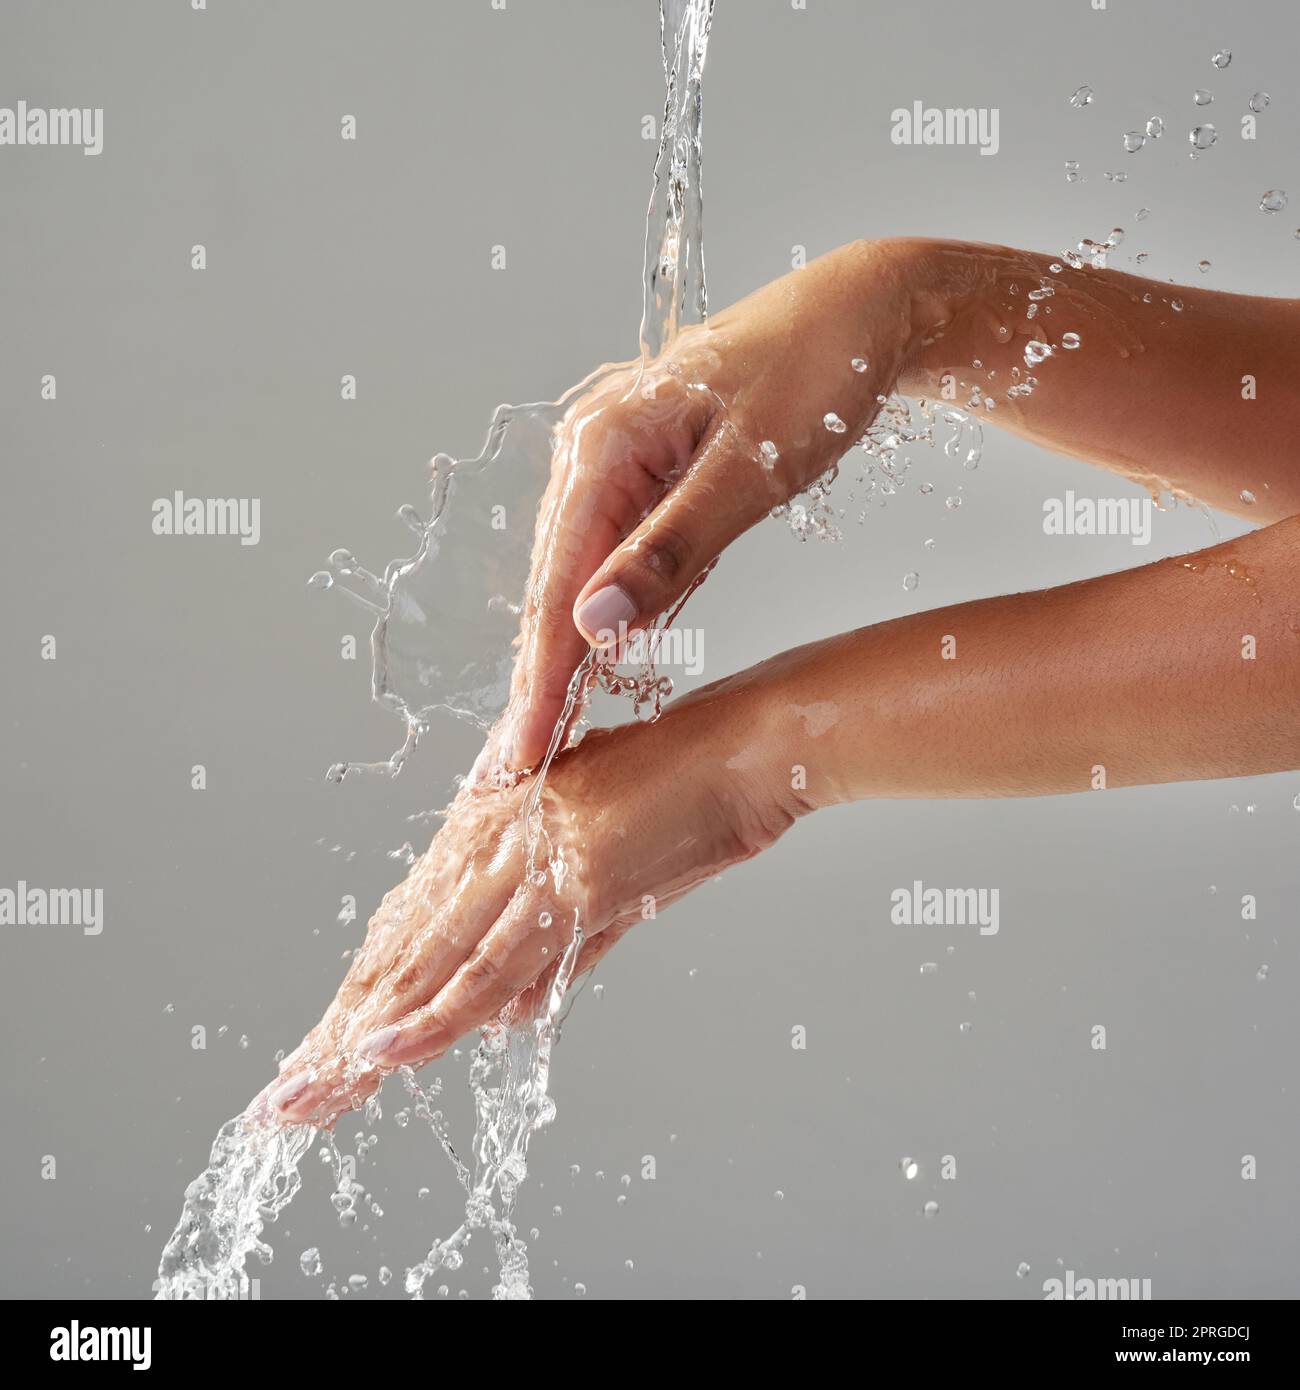 Lavándose y salpicando. Las manos se mantuvieron bajo un chorro de agua sobre un fondo gris. Foto de stock